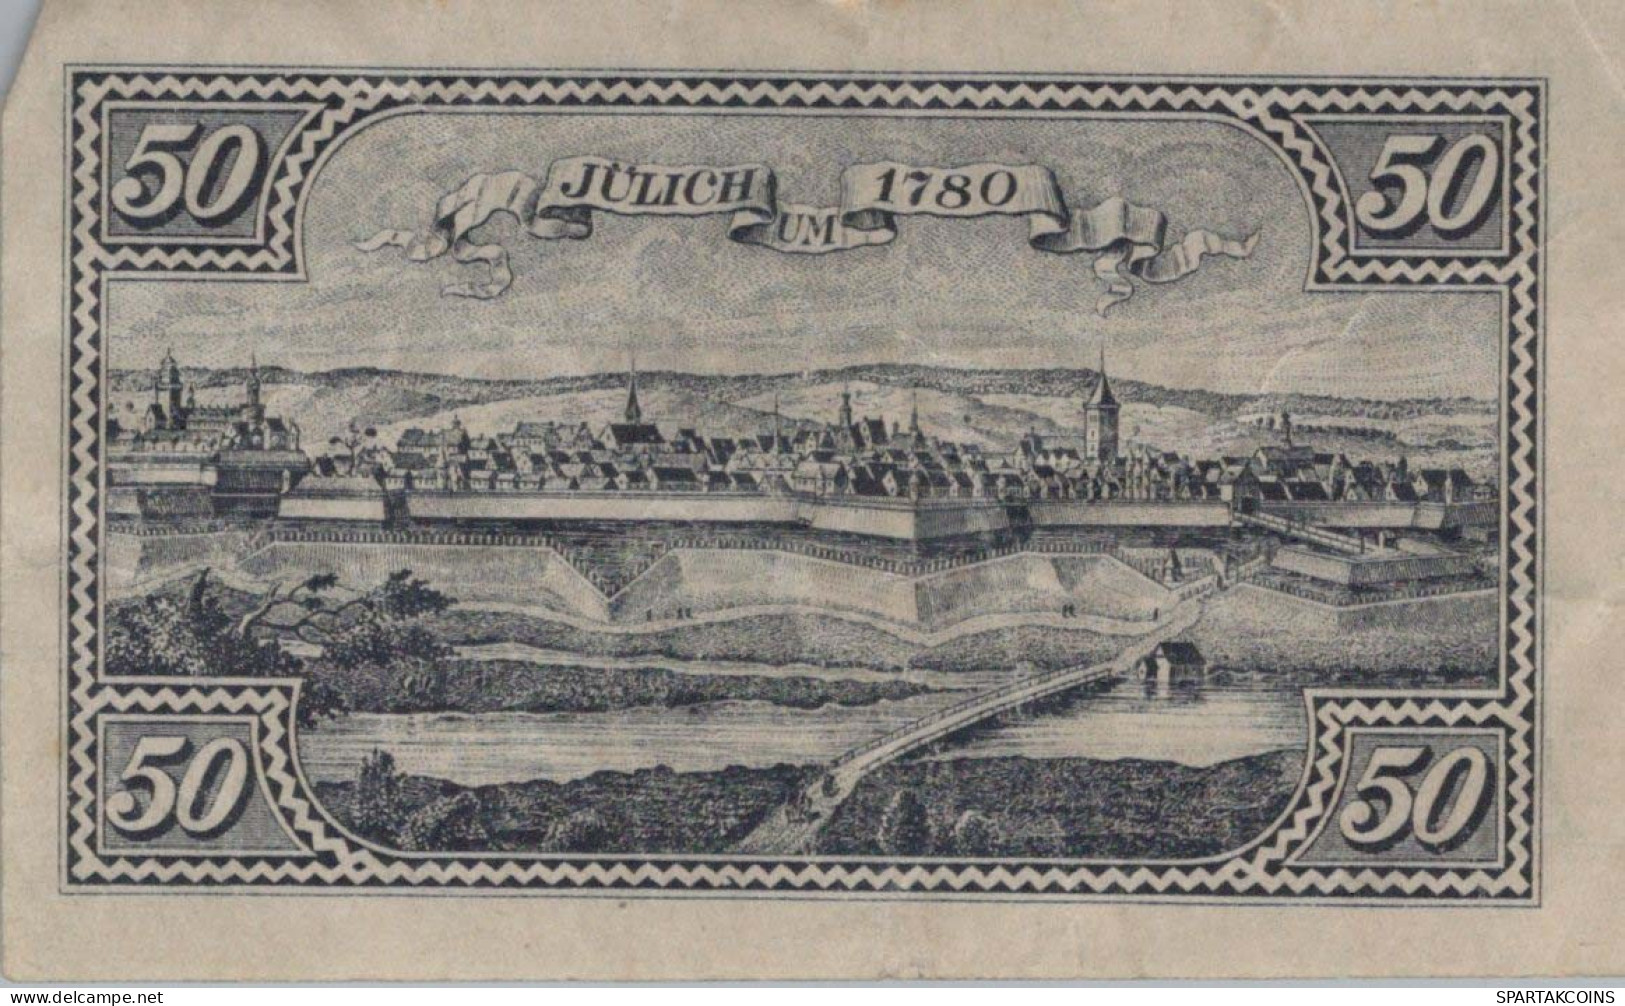 50 PFENNIG 1919 Stadt JÜLICH Rhine DEUTSCHLAND Notgeld Banknote #PG423 - [11] Local Banknote Issues